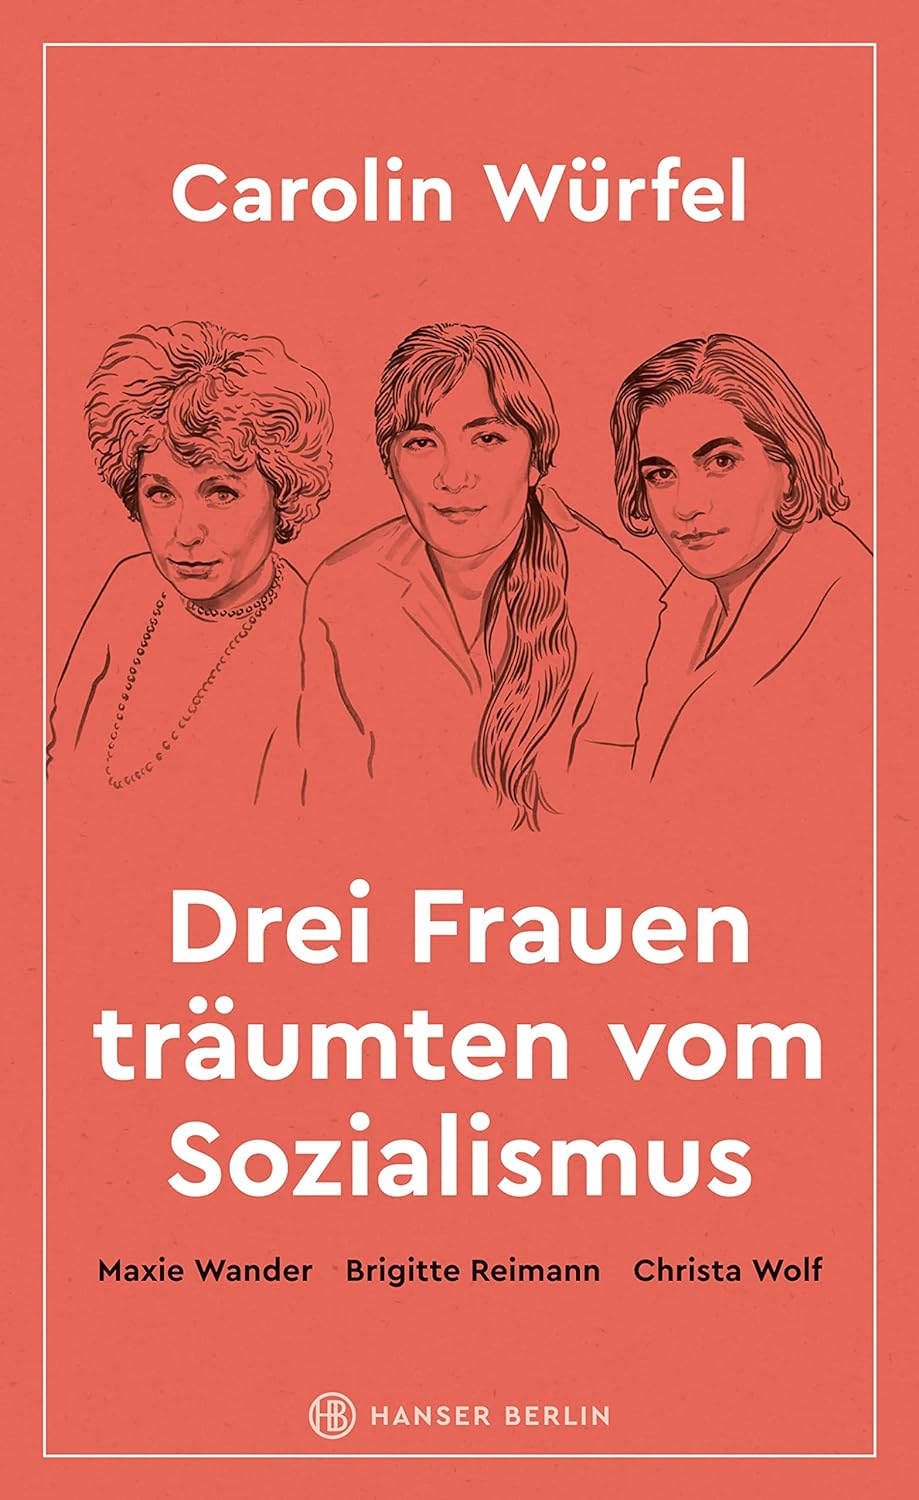 Drei Frauen trumten vom Sozialismus